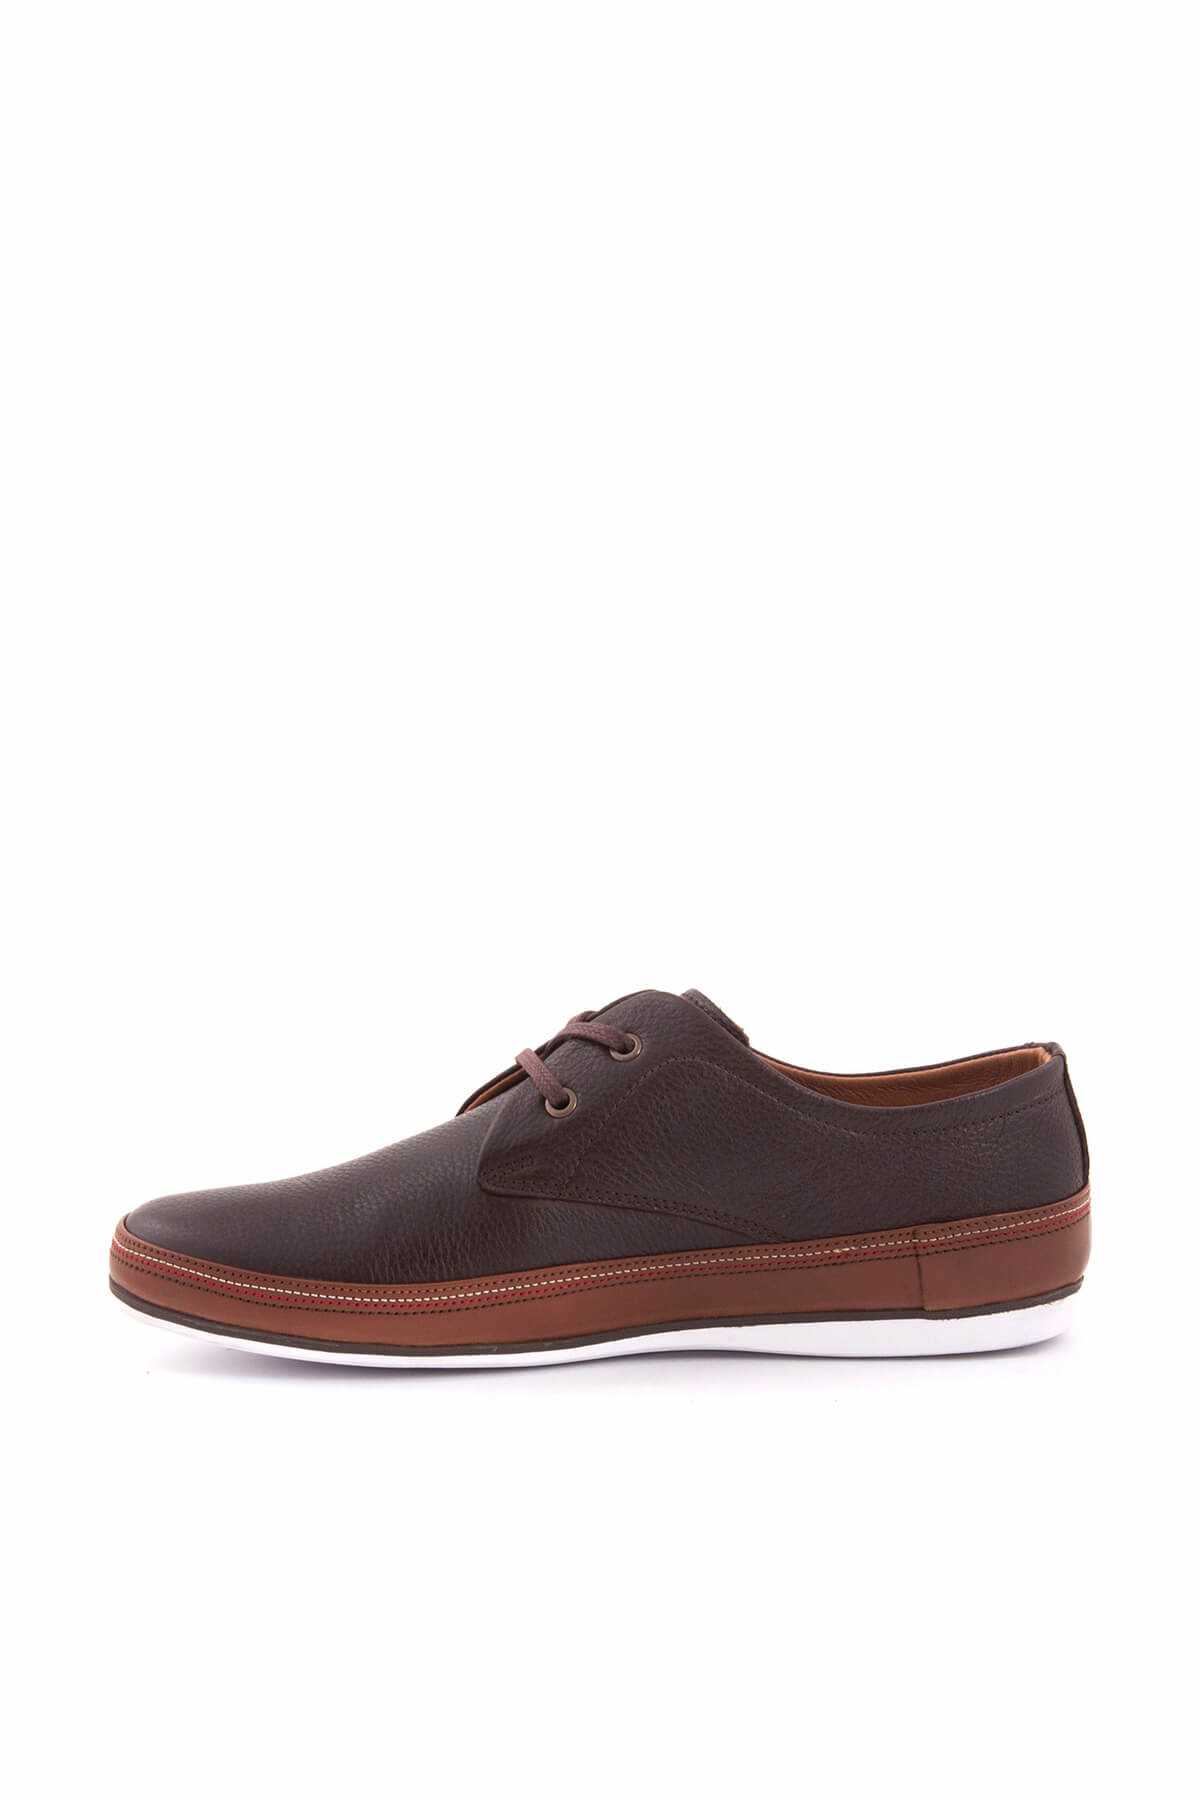 کفش کلاسیک مردانه اسپرت جدید برند کمال تانجا رنگ قهوه ای کد ty792917